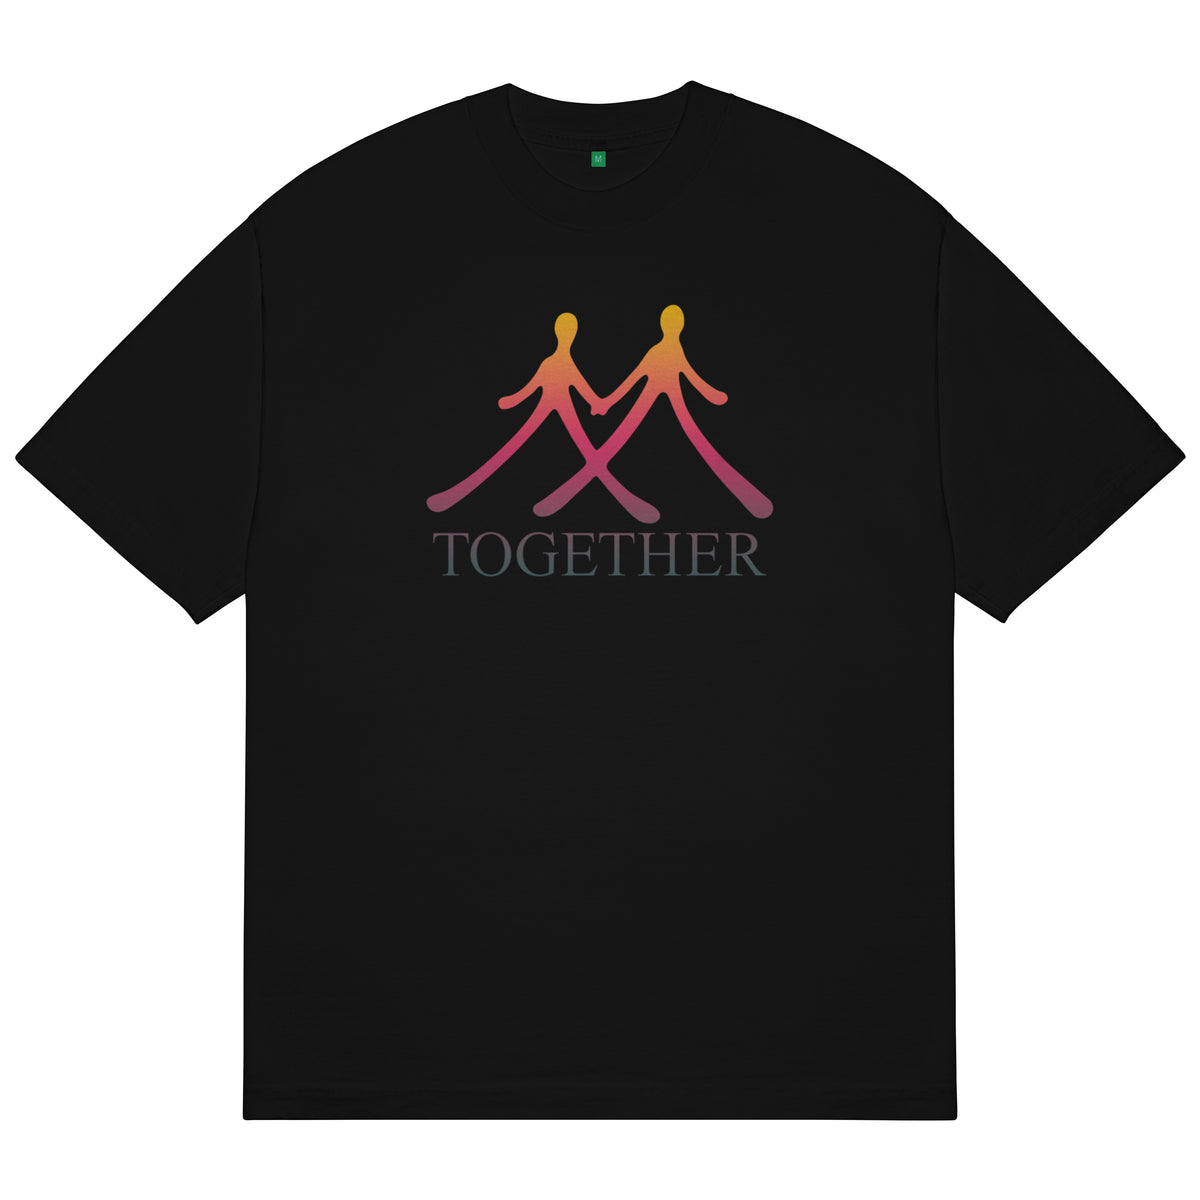 Together T-Shirt (Black)